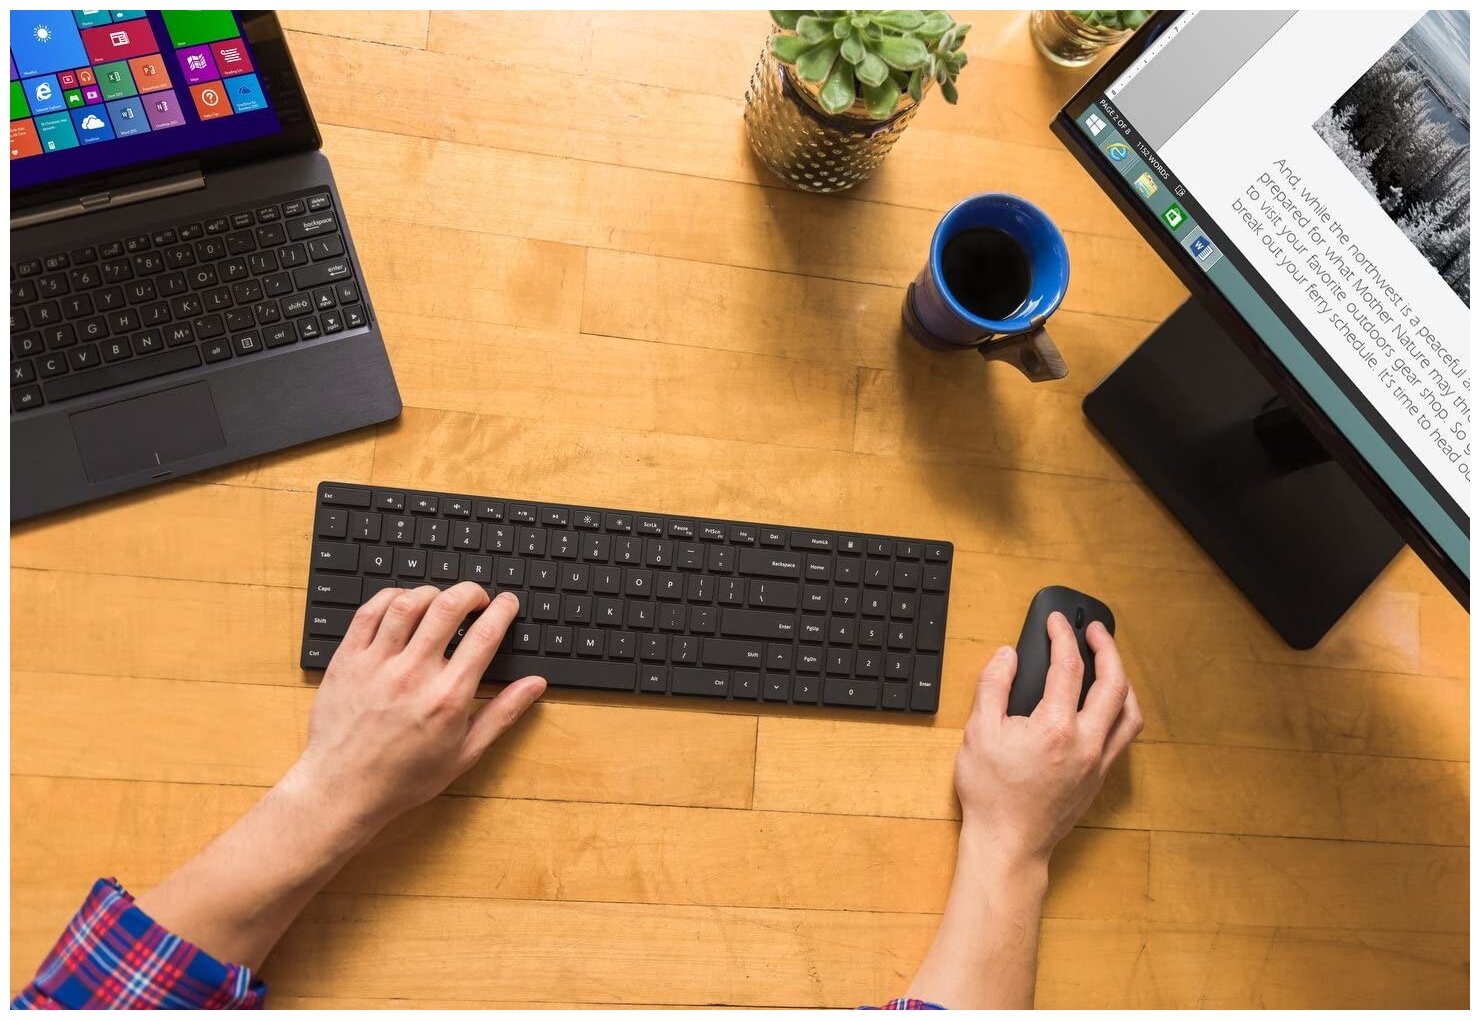 Клавиатура + мышь Microsoft Designer 7N9-00018 клав:черный мышь:черный Bluetooth